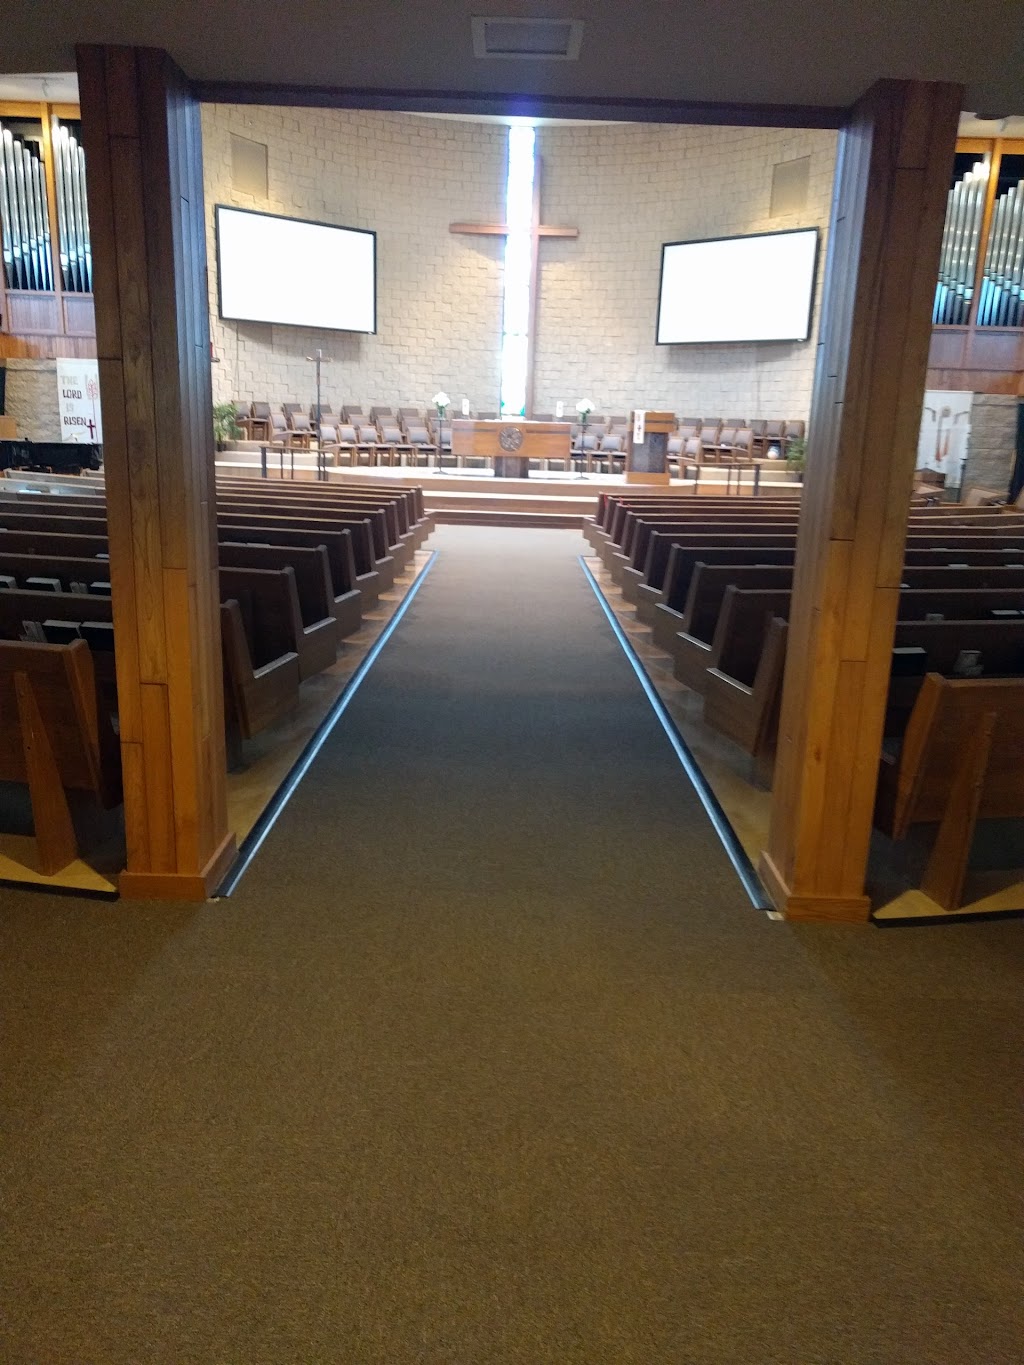 Trinity Lutheran Church Kimberly Way | 1101 Kimberly Way, Lisle, IL 60532, USA | Phone: (630) 964-1272